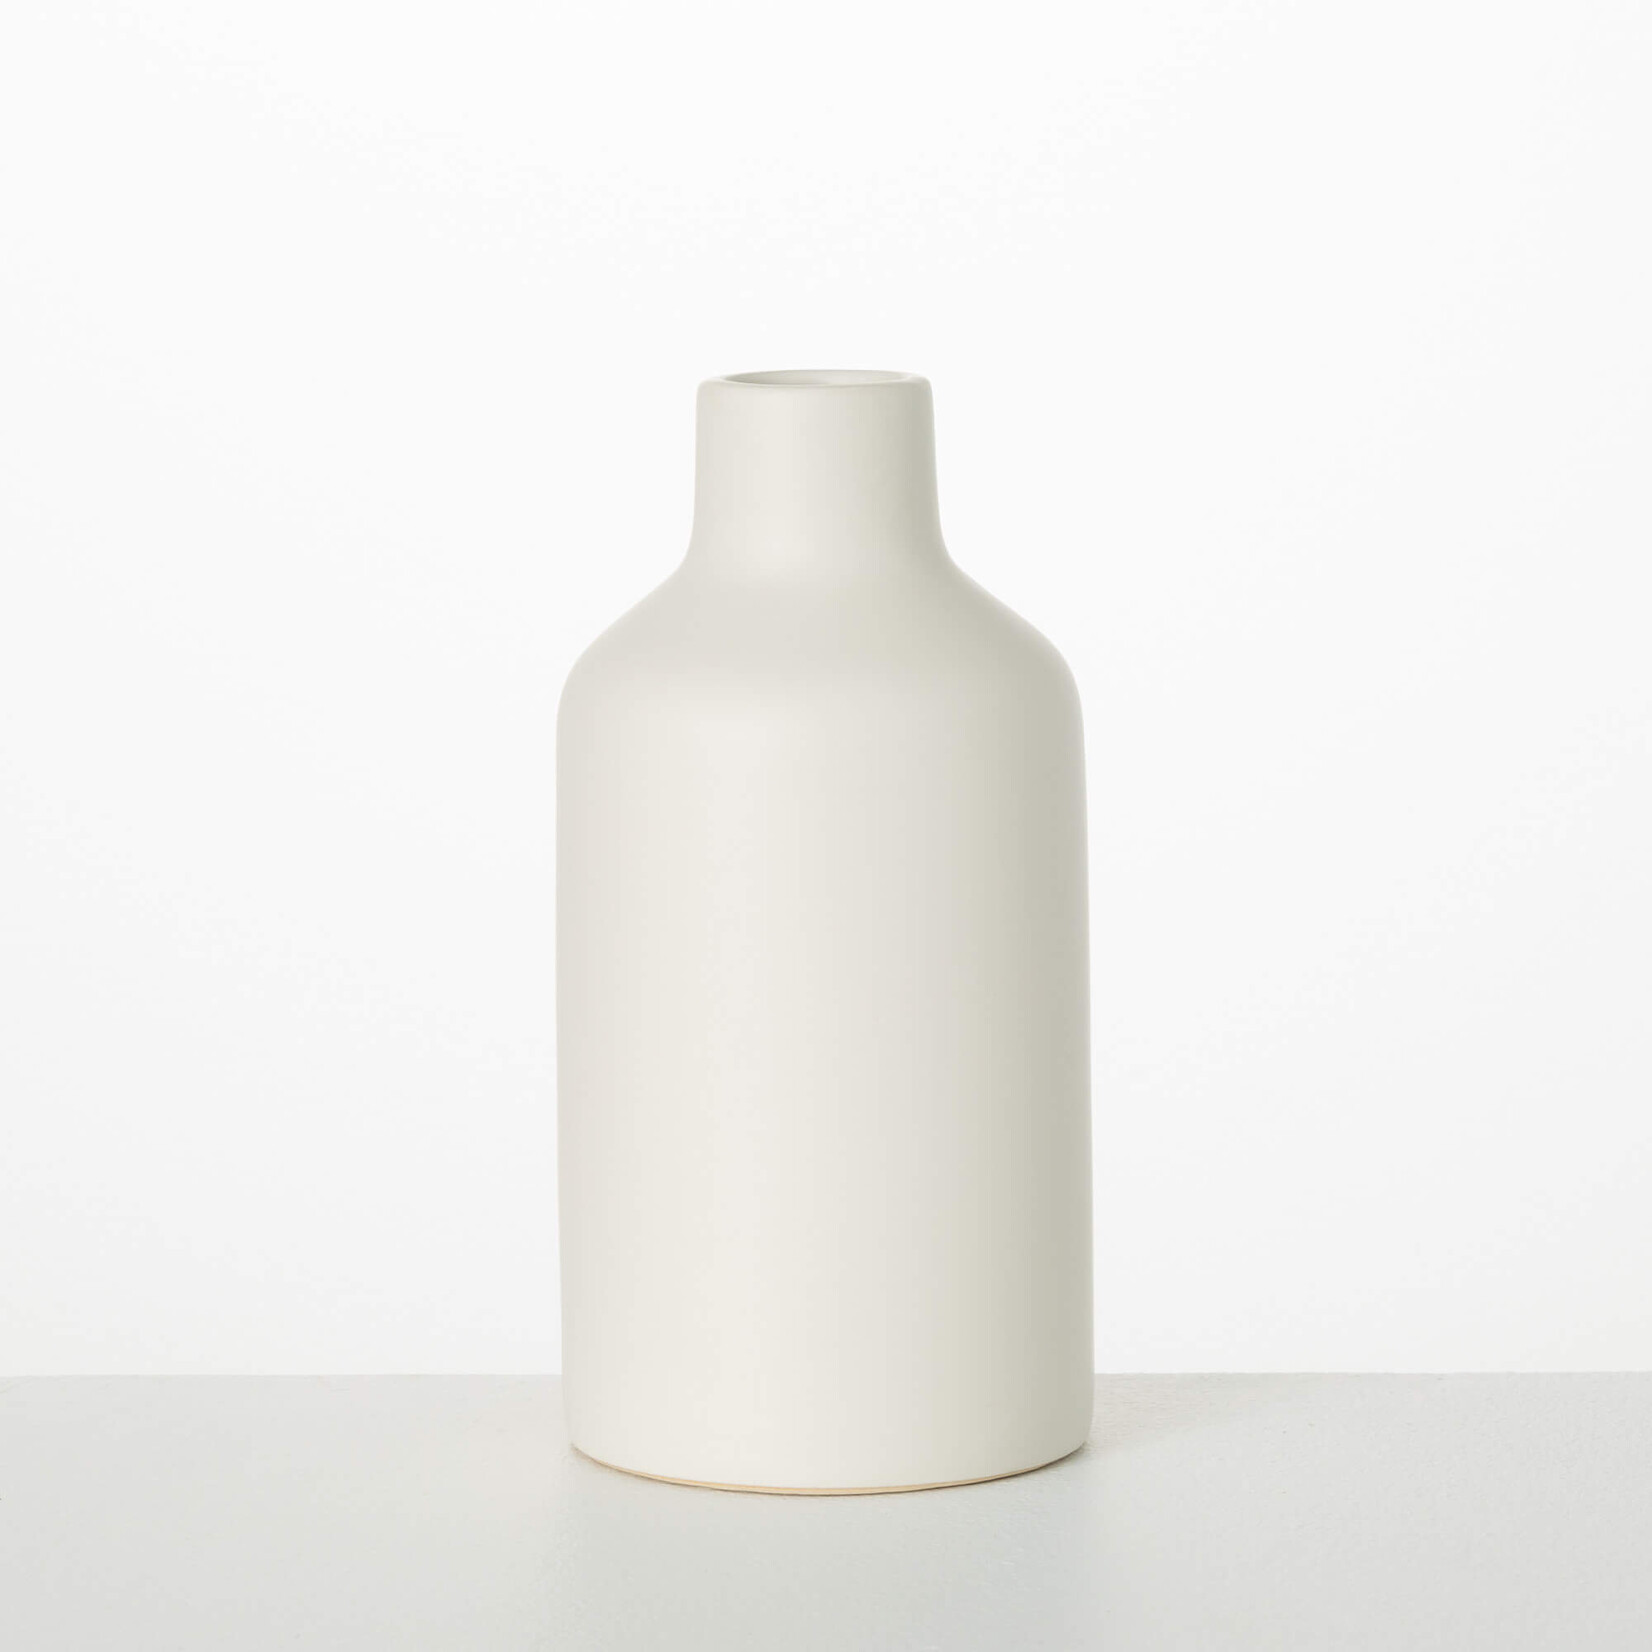 Matte White Bottle Vase, 11"